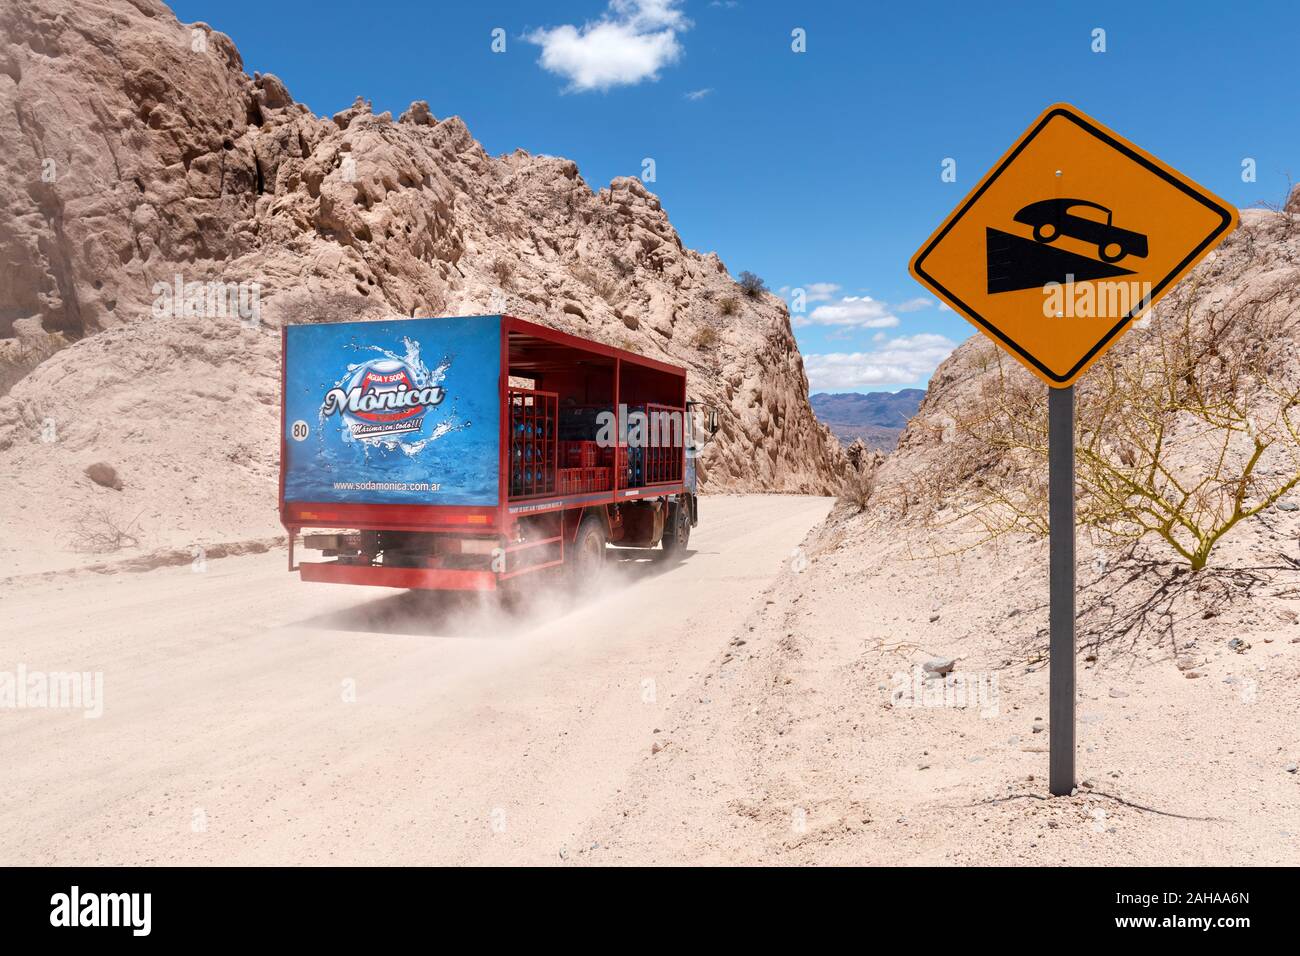 Camion voyageant sur la route en gravier de la route 40 en passant par la Quebrada de las Flechas région de montagne, près de la ville de Cafayate, Argentine. Banque D'Images